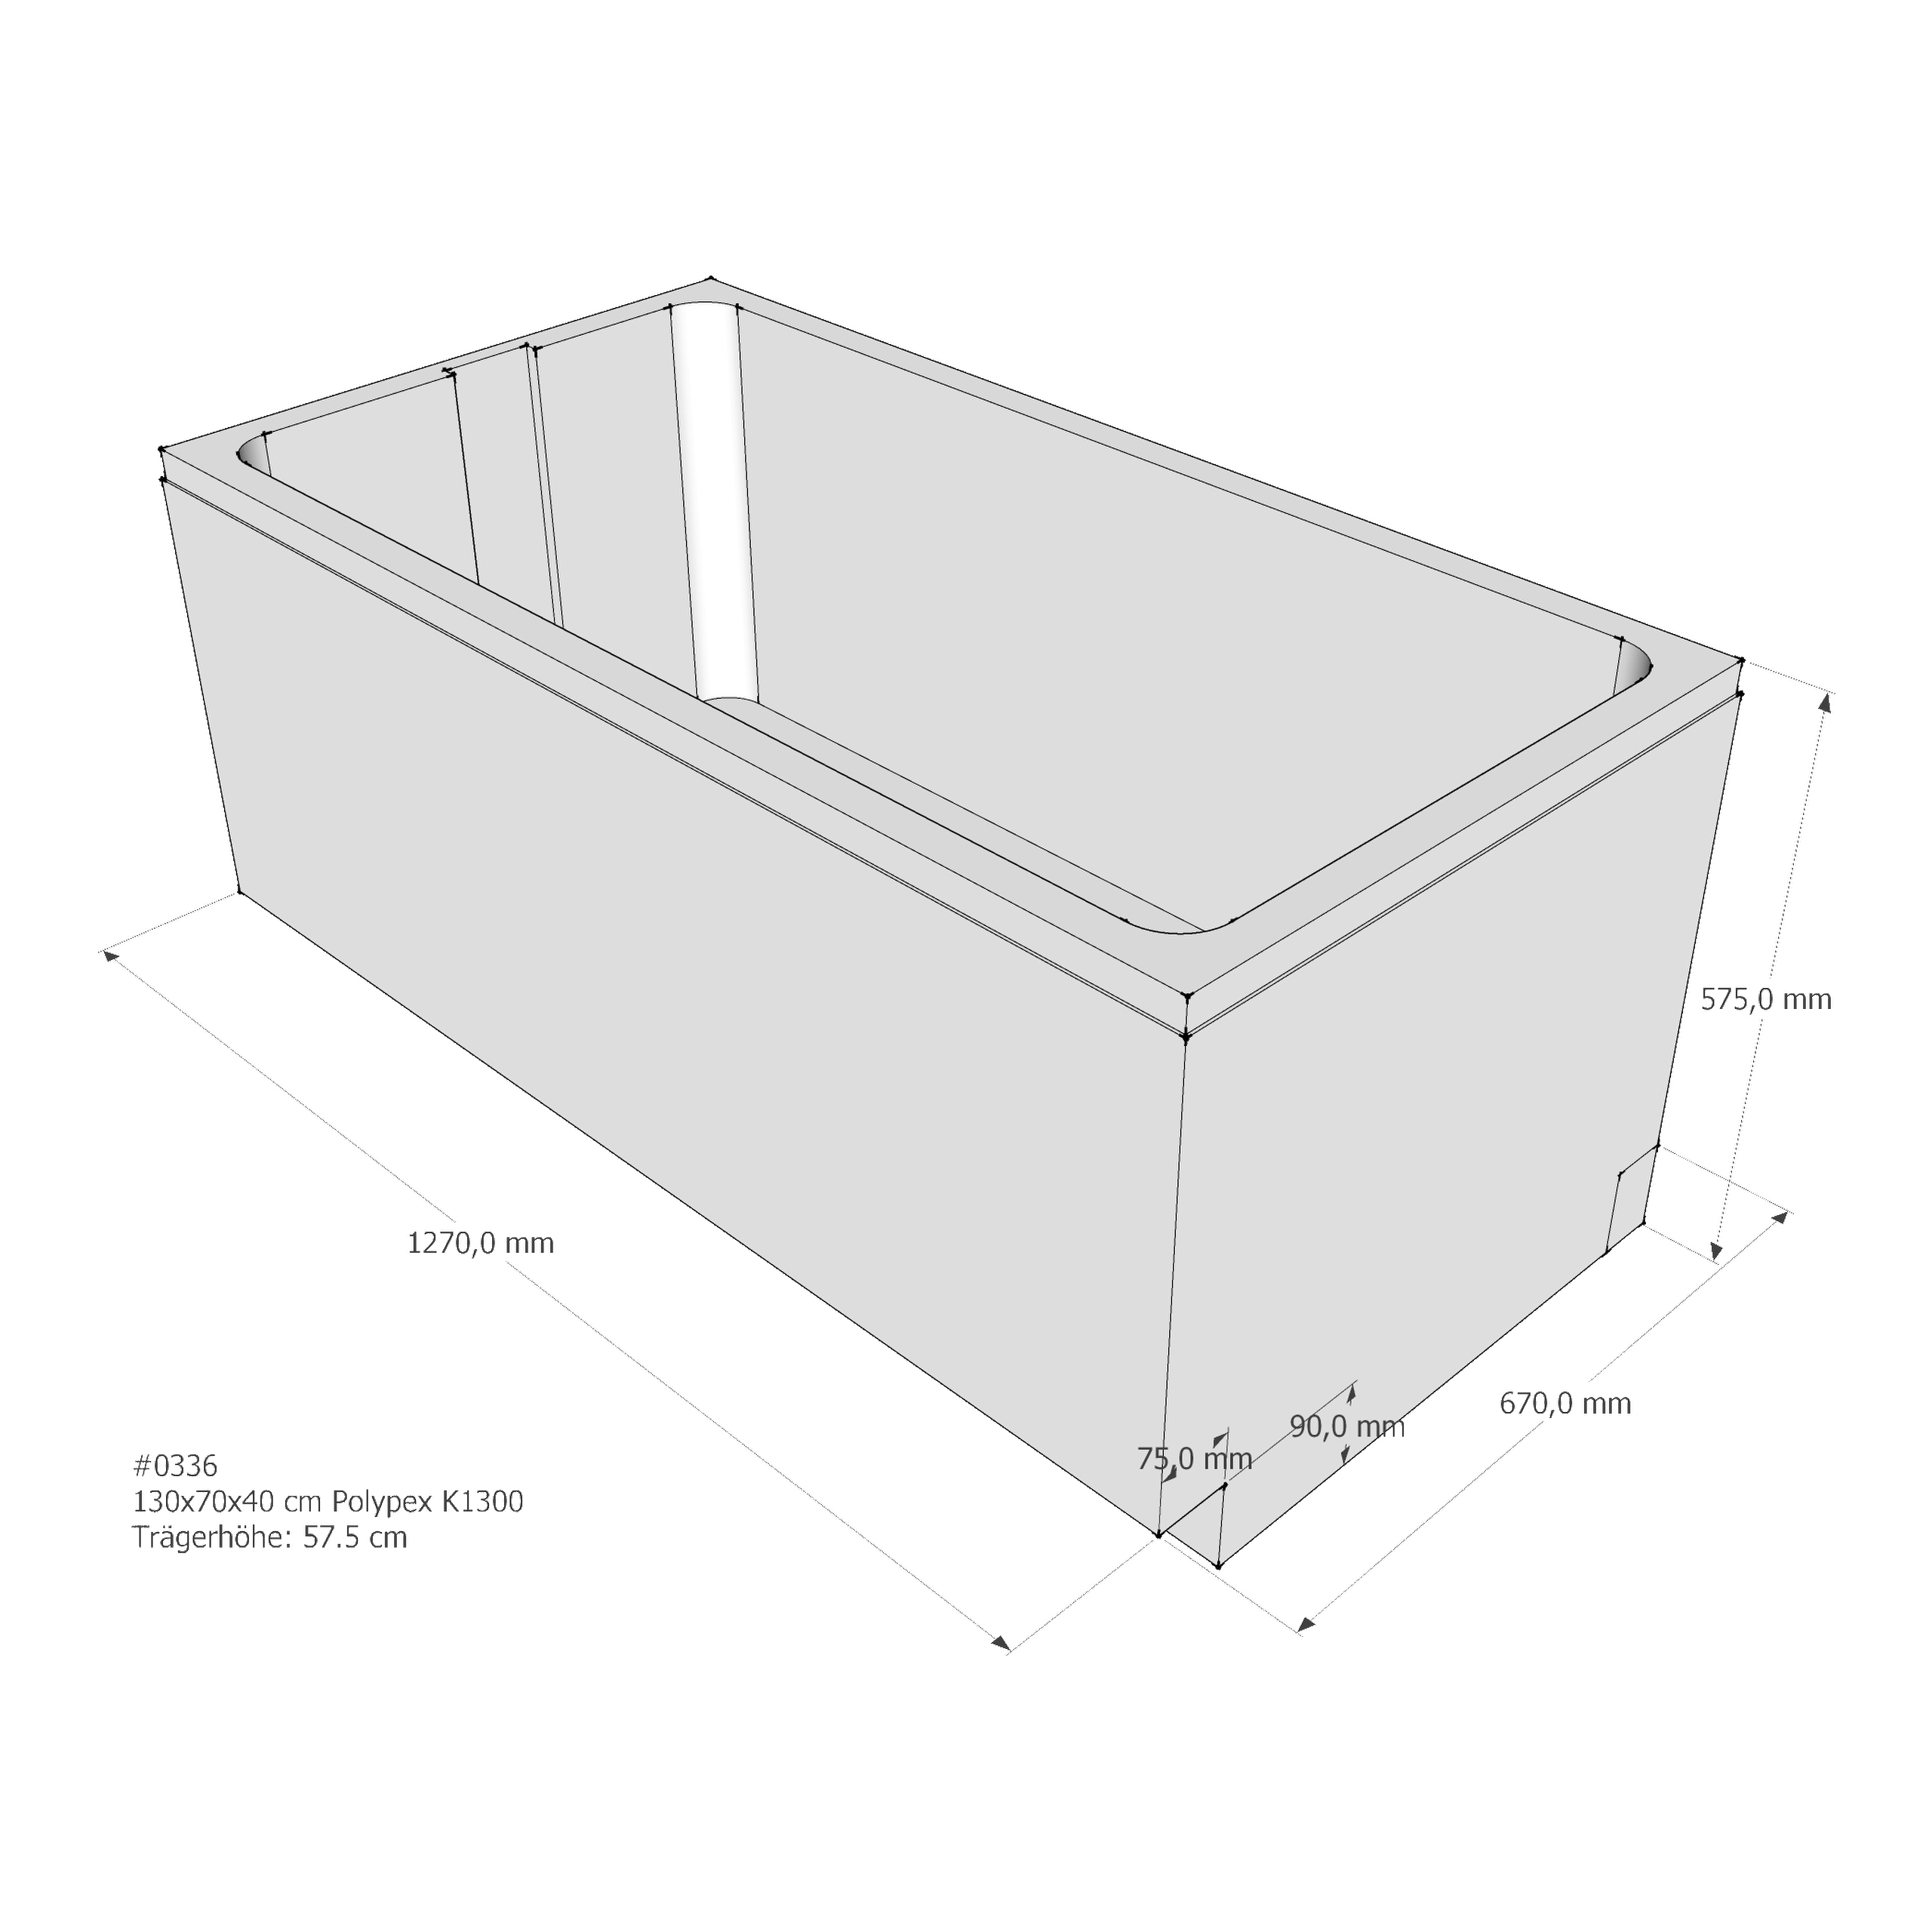 Badewannenträger für Polypex K1300 130 × 70 × 40 cm